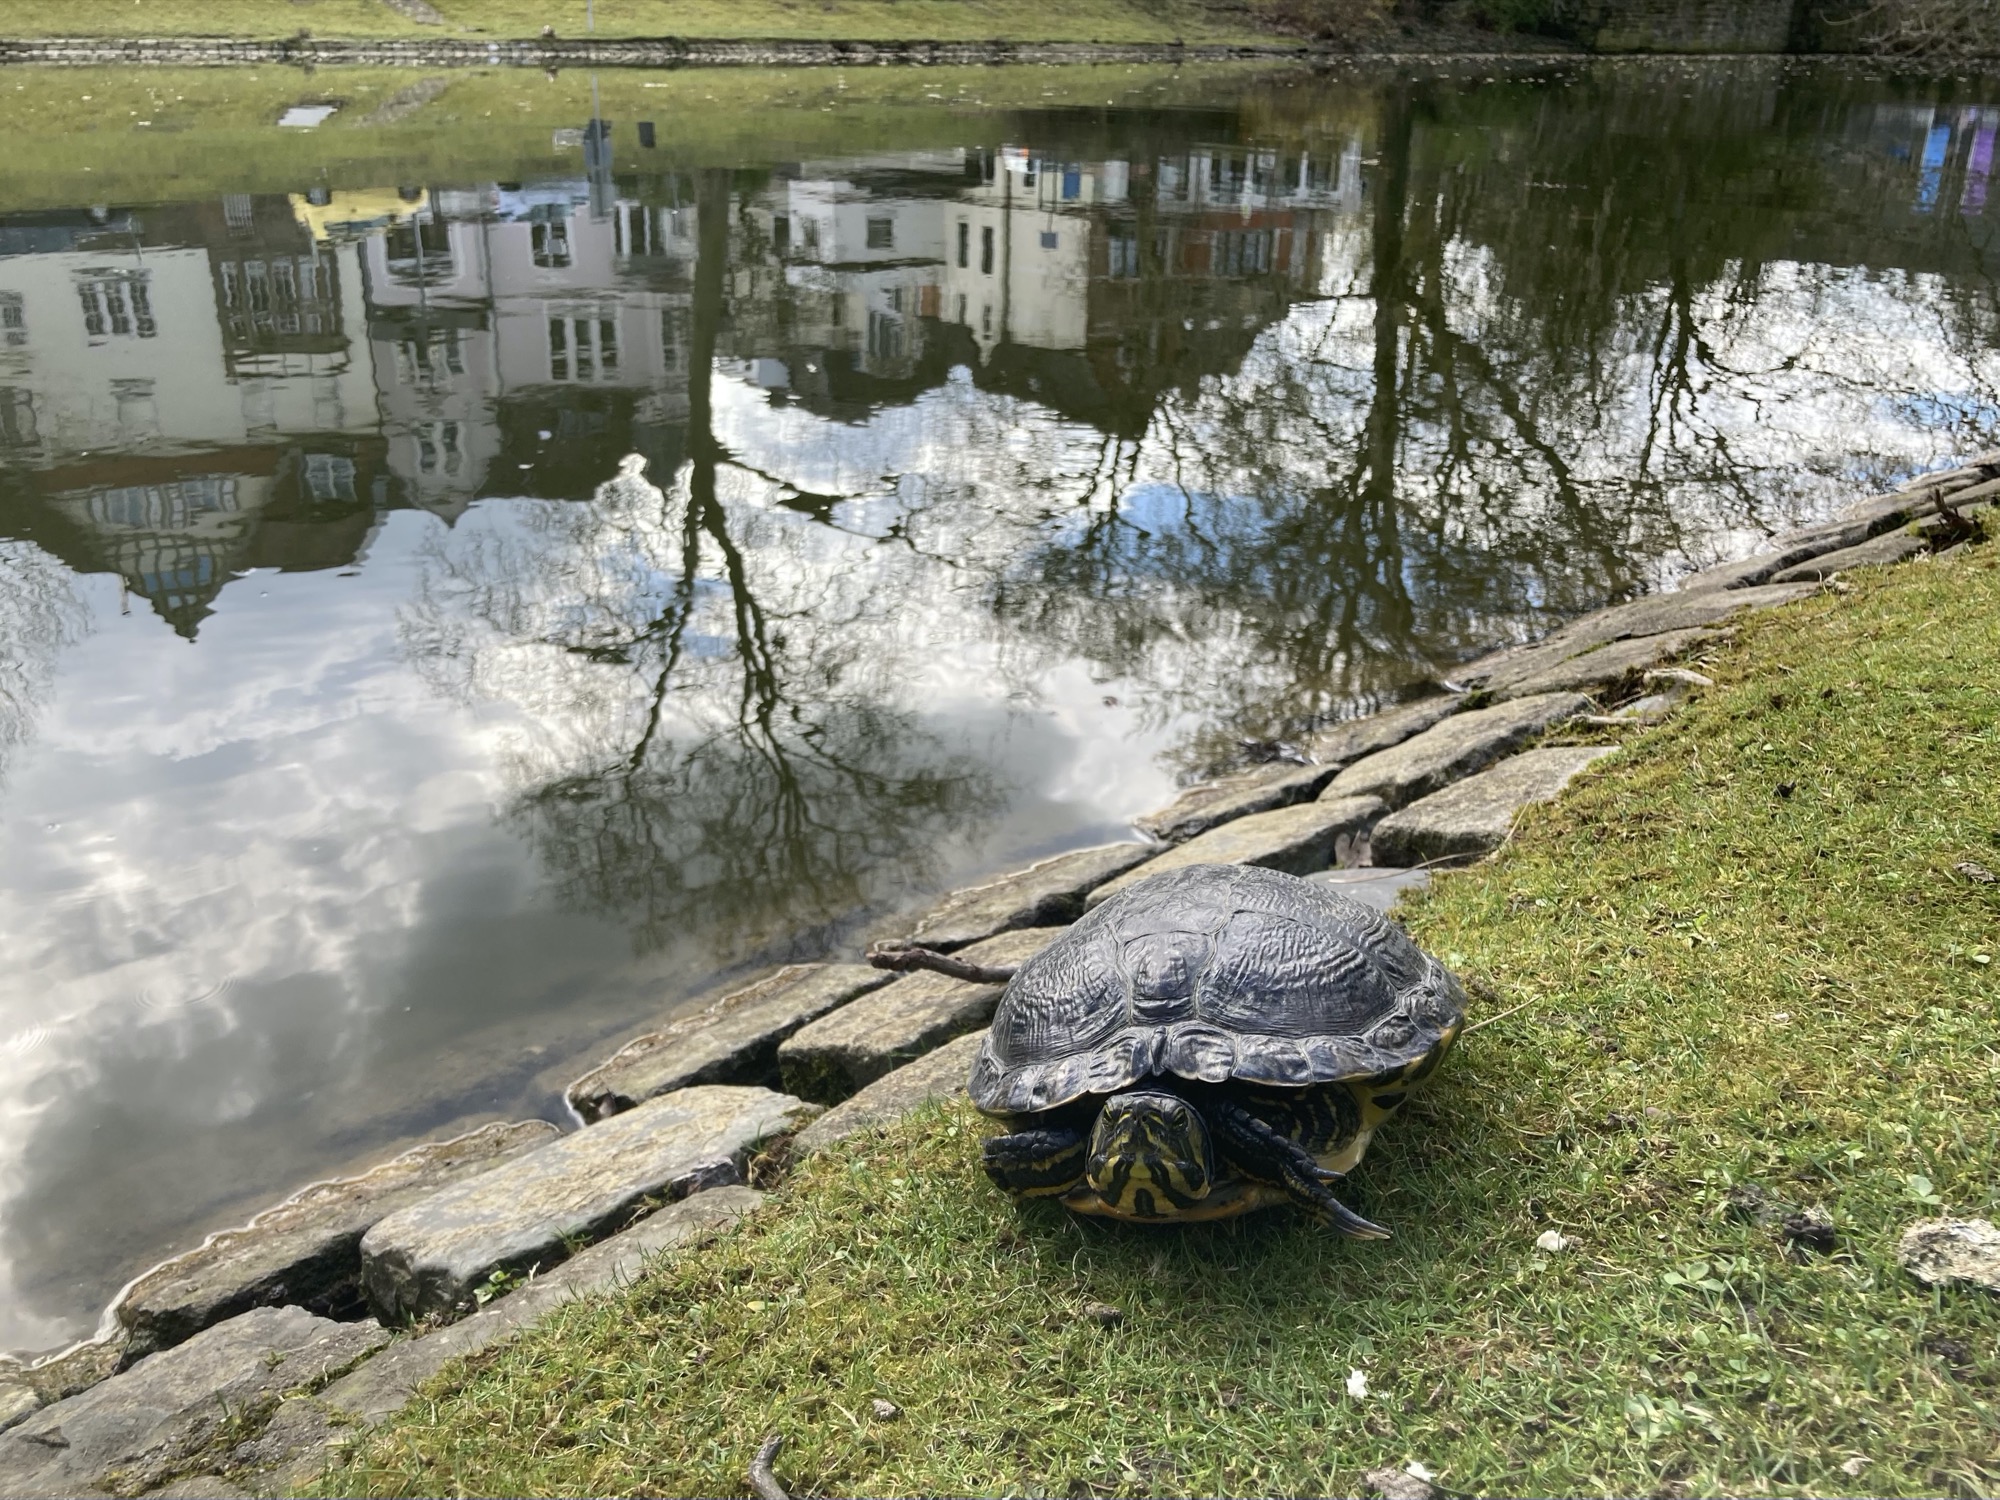 Schildkröte am Ufer eines Teichs, die Schildkröte ist dabei, Kopf und vordere Füße in den Panzer zu ziehen, im Teich spiegeln sich Bäume sowie die Häuser auf der anderen Seite des Teichs